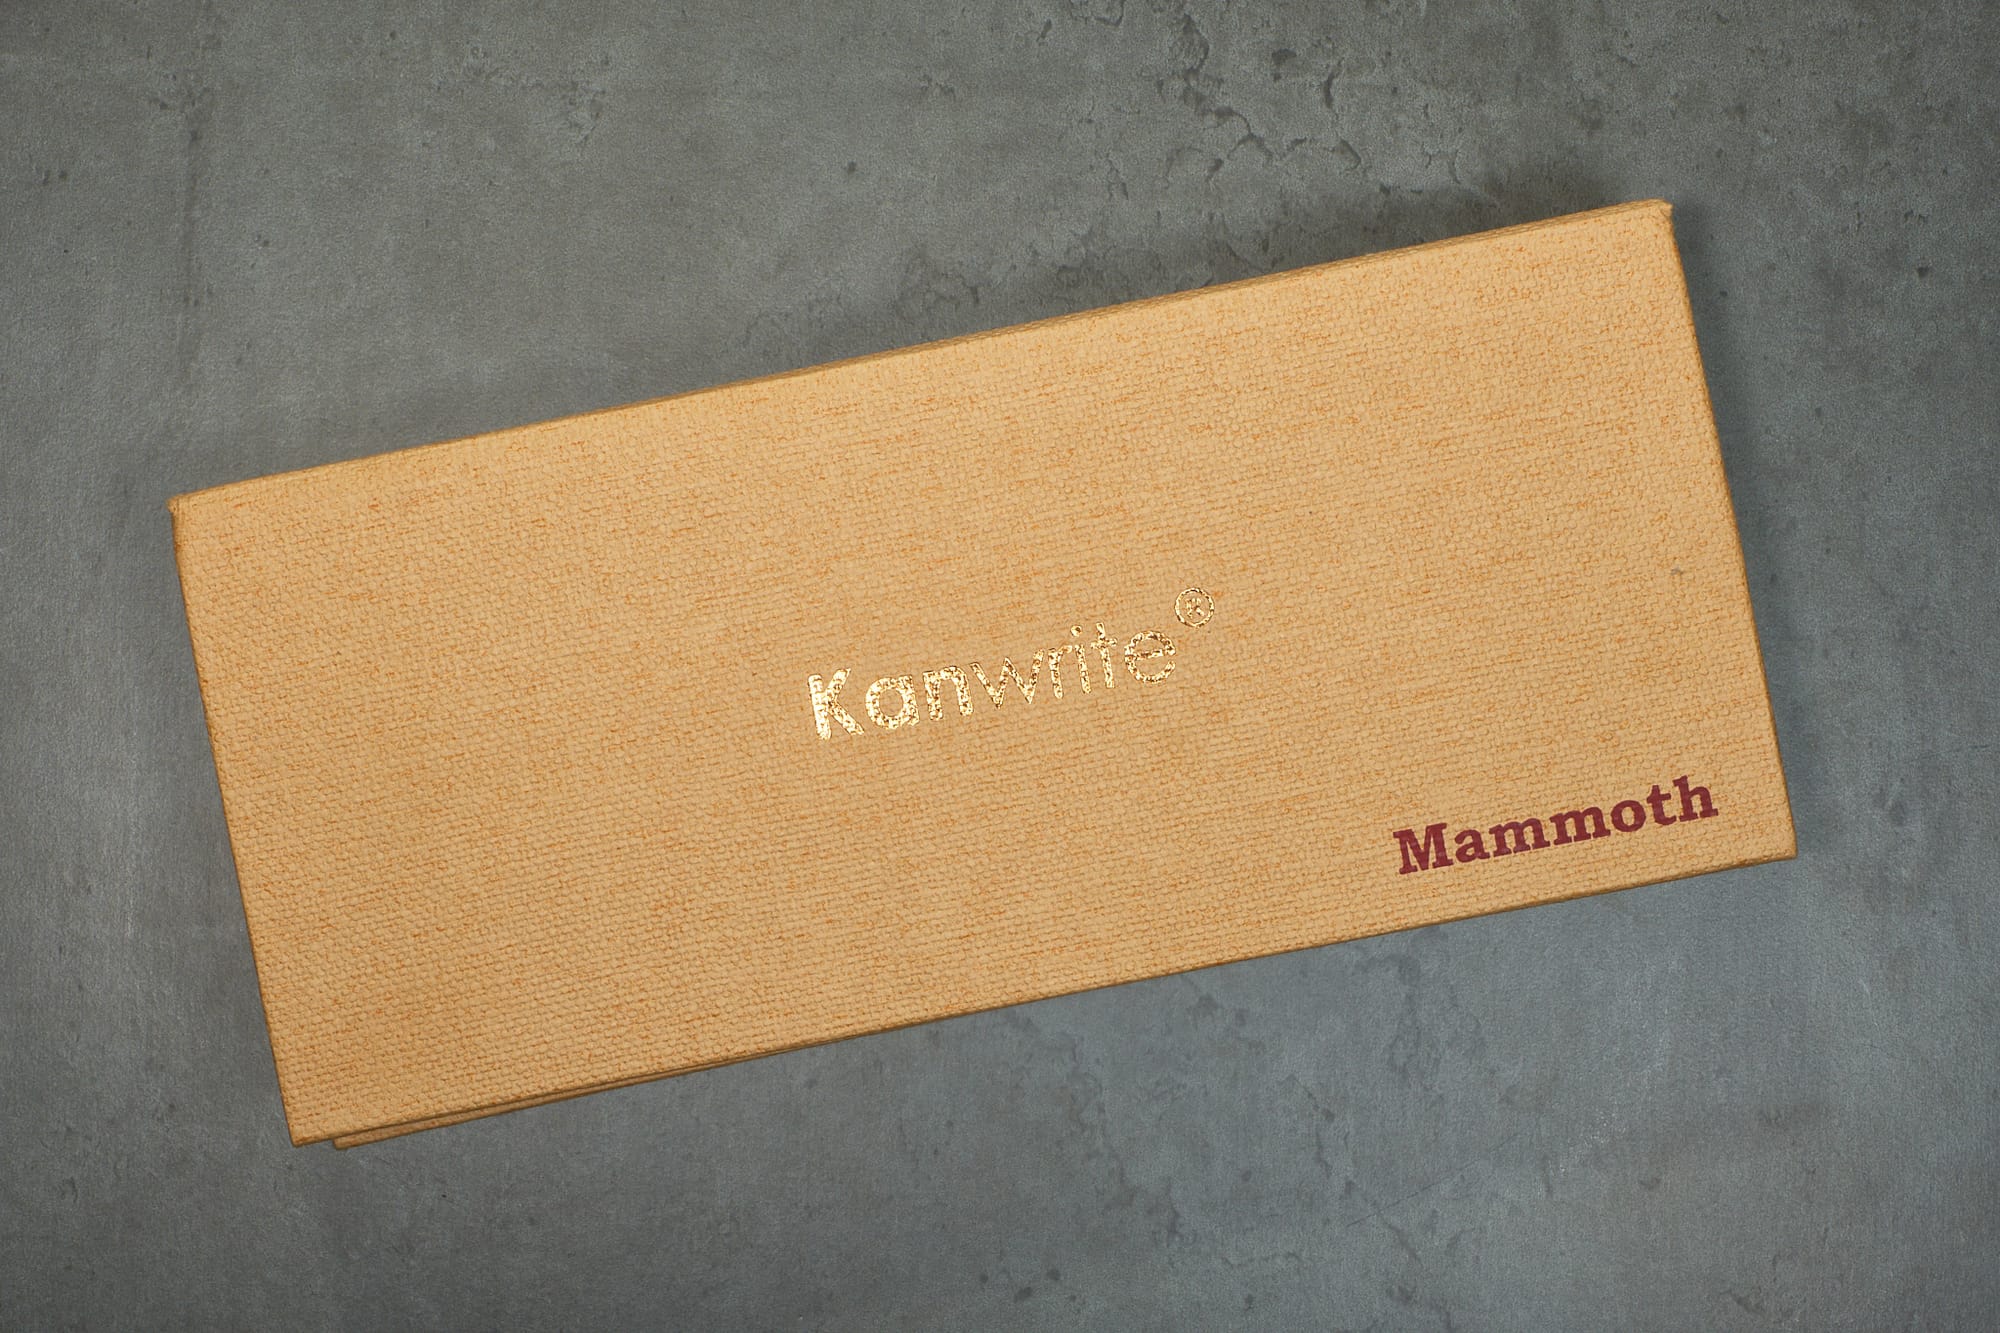 Kanwrite Mammoth Review